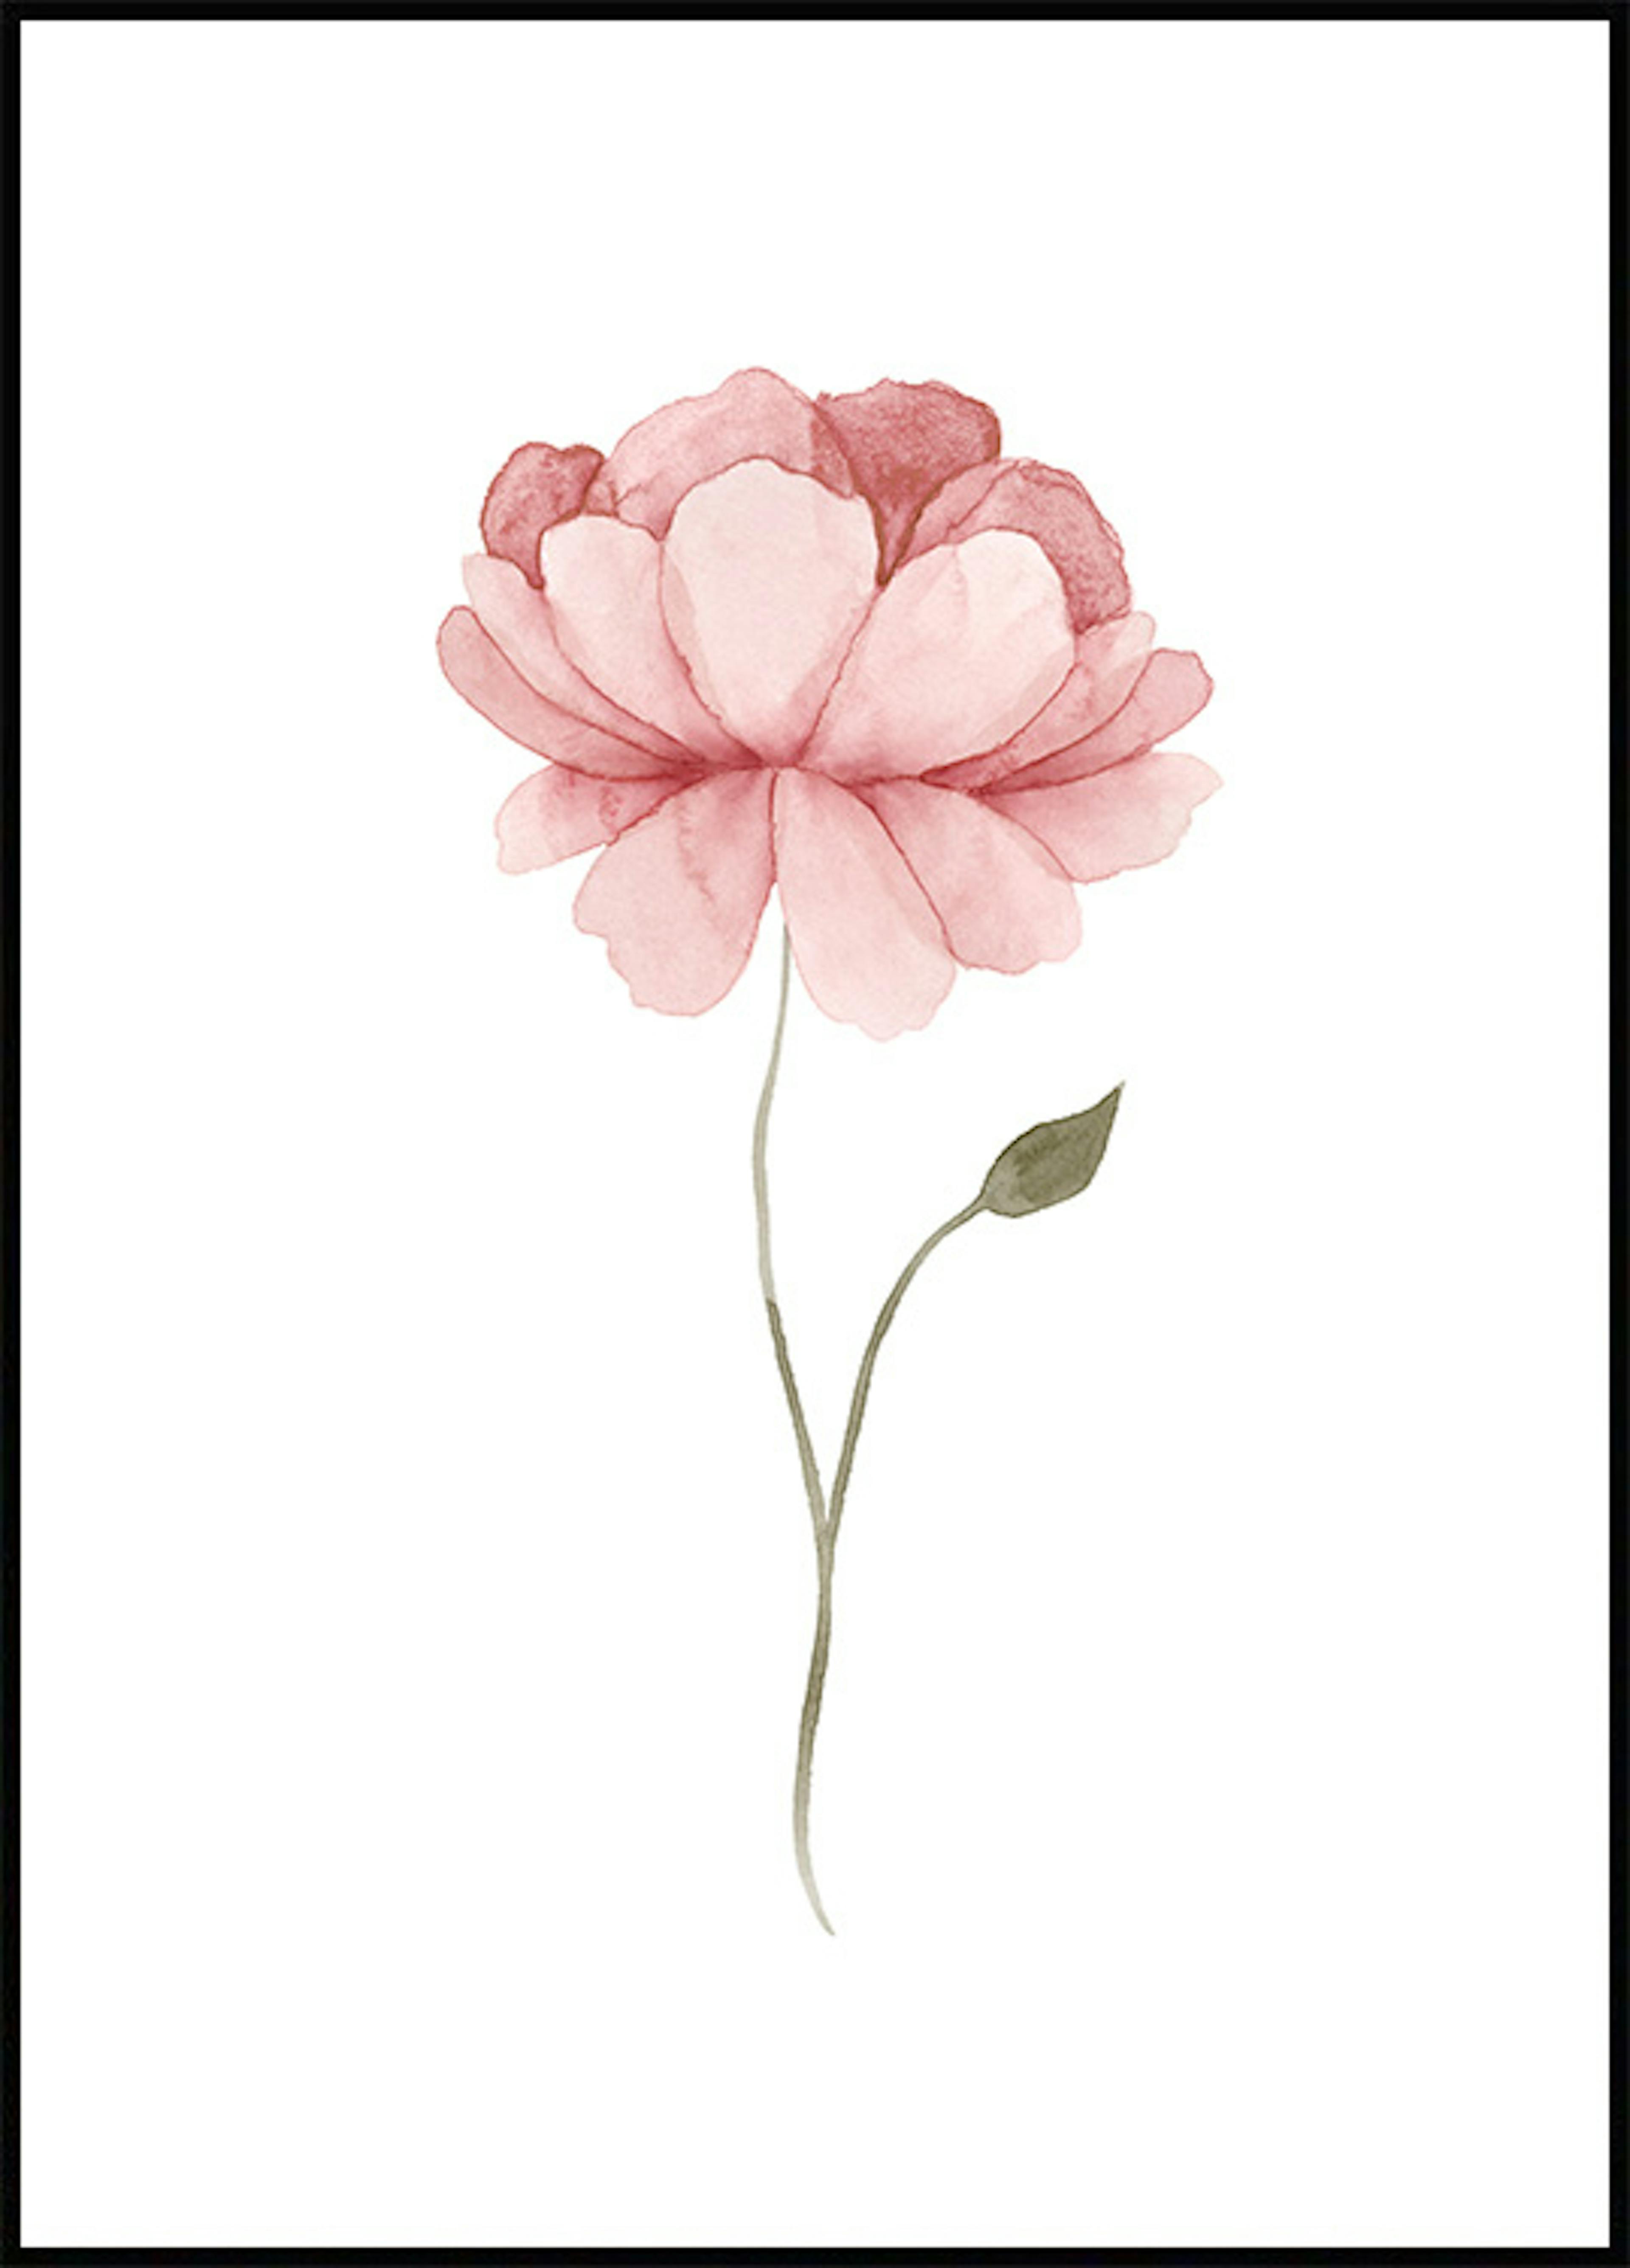 ملصق لزهرة الفاوانيا بألوان مائية 0